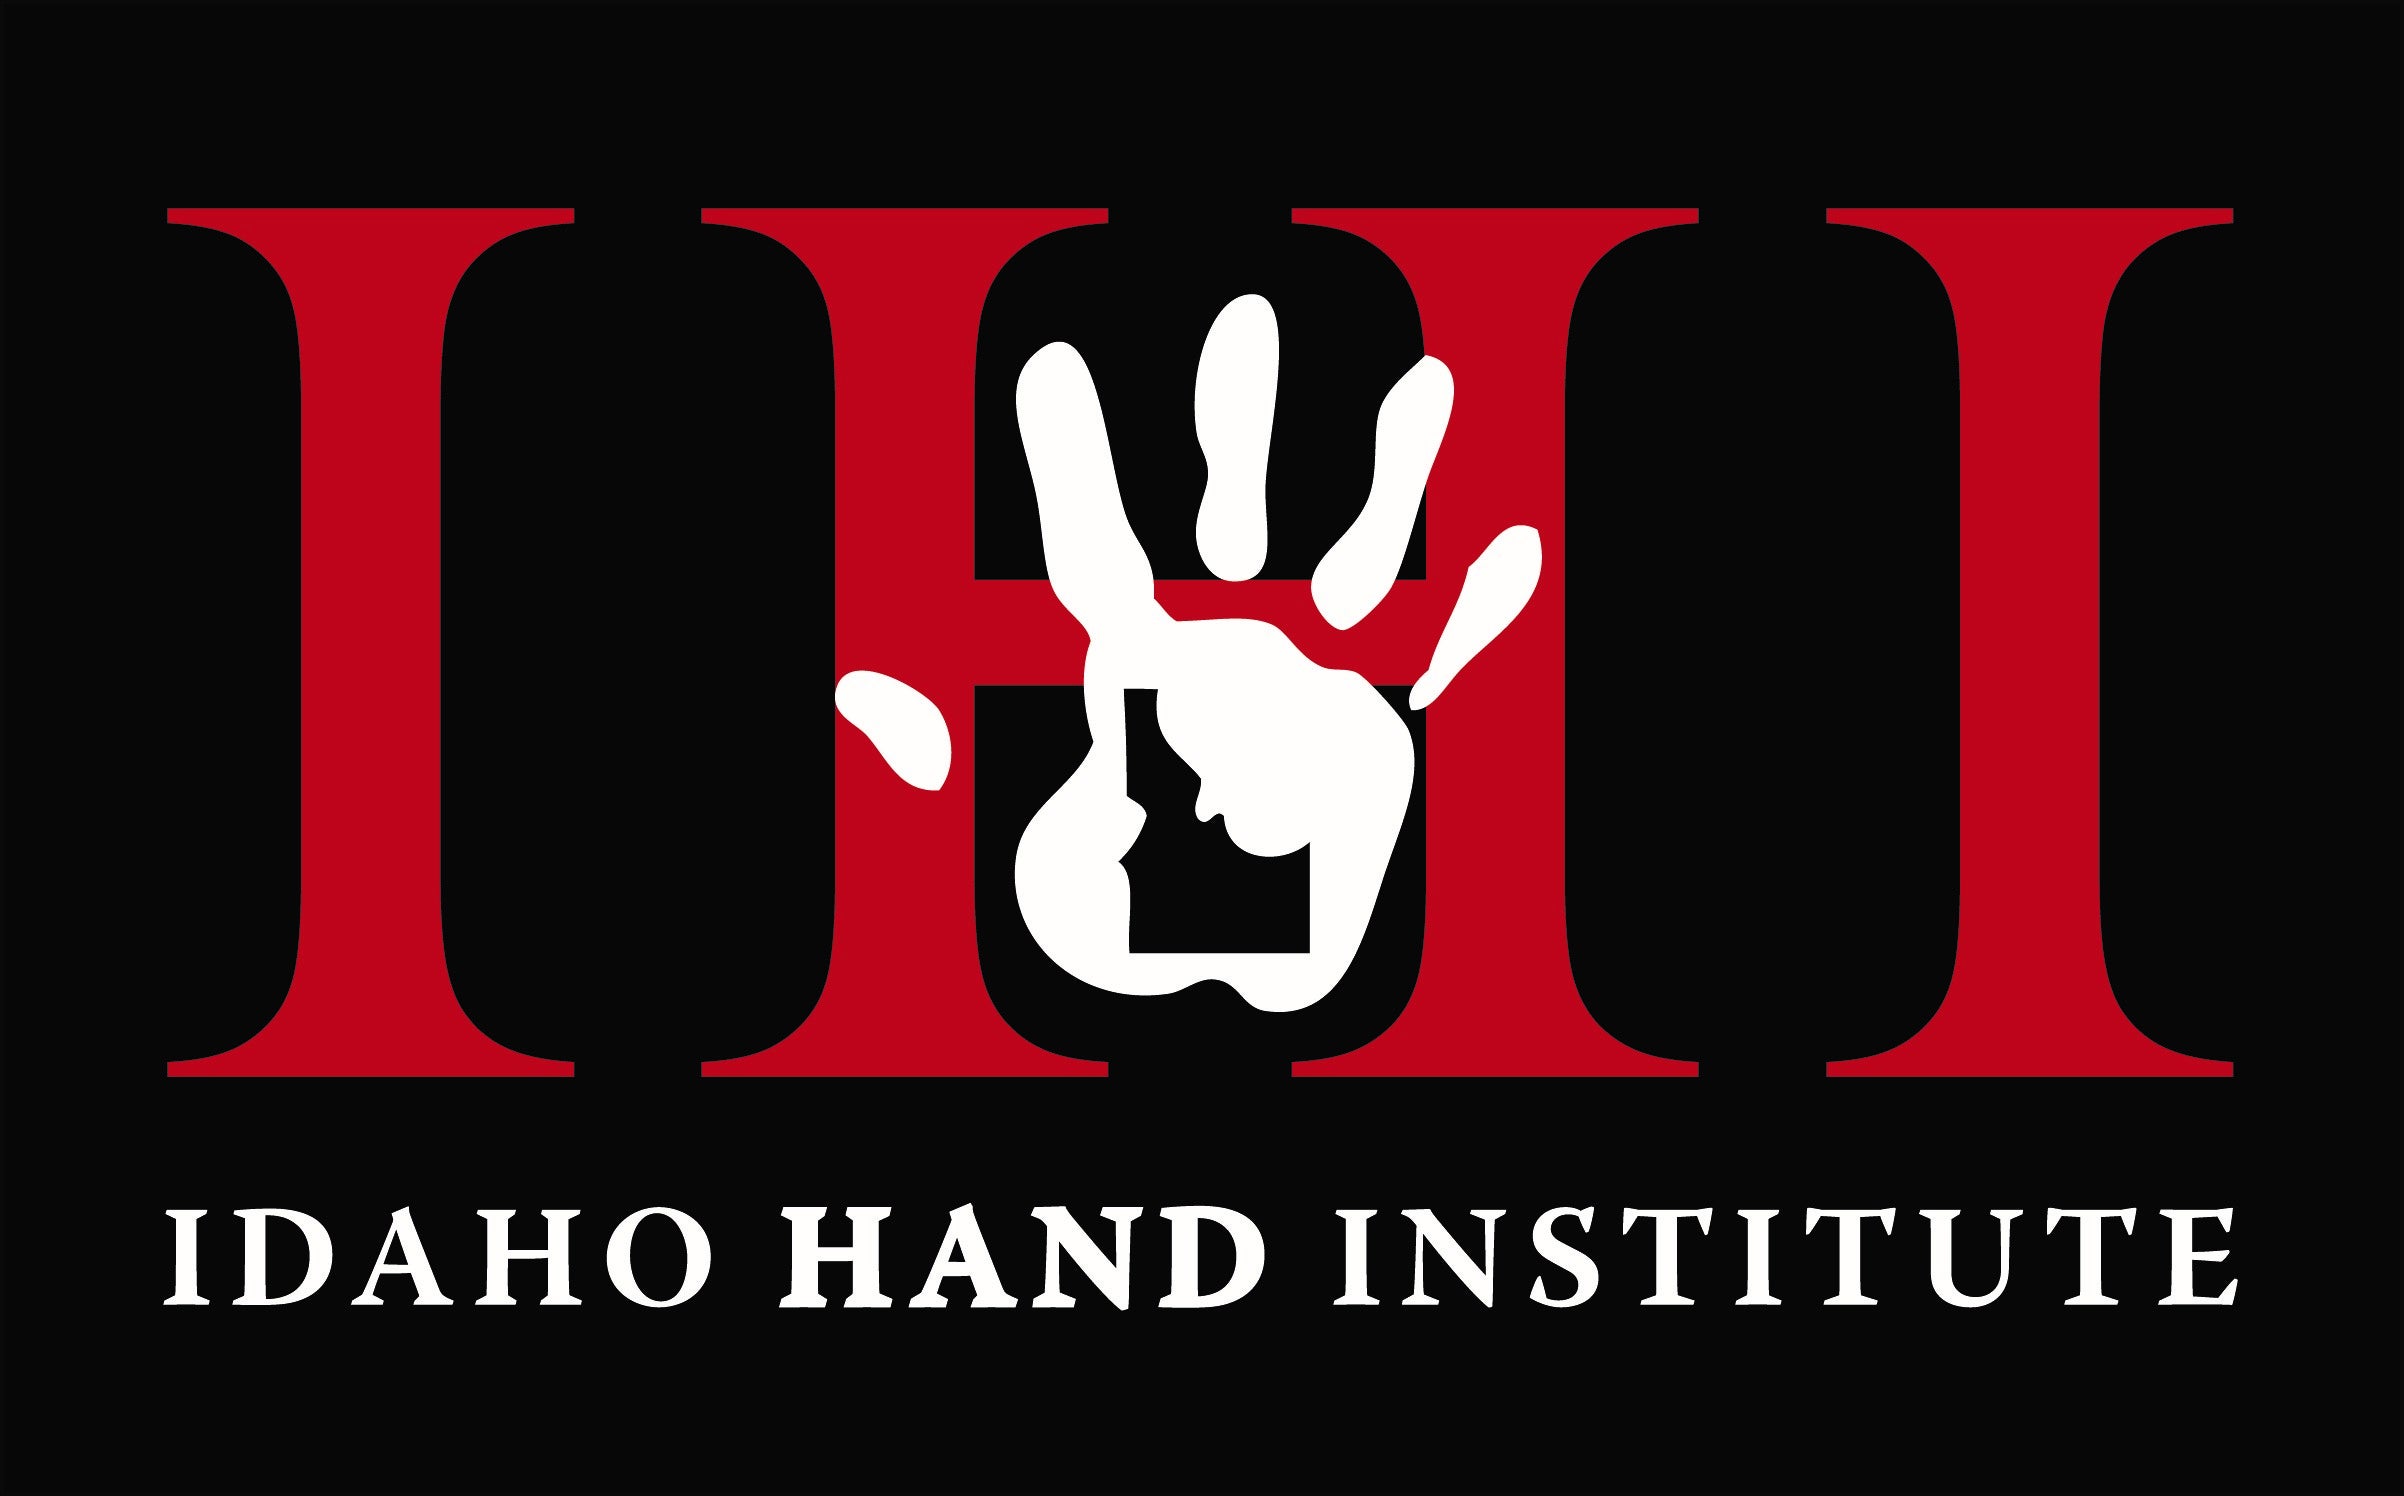 Idaho Hand Institute